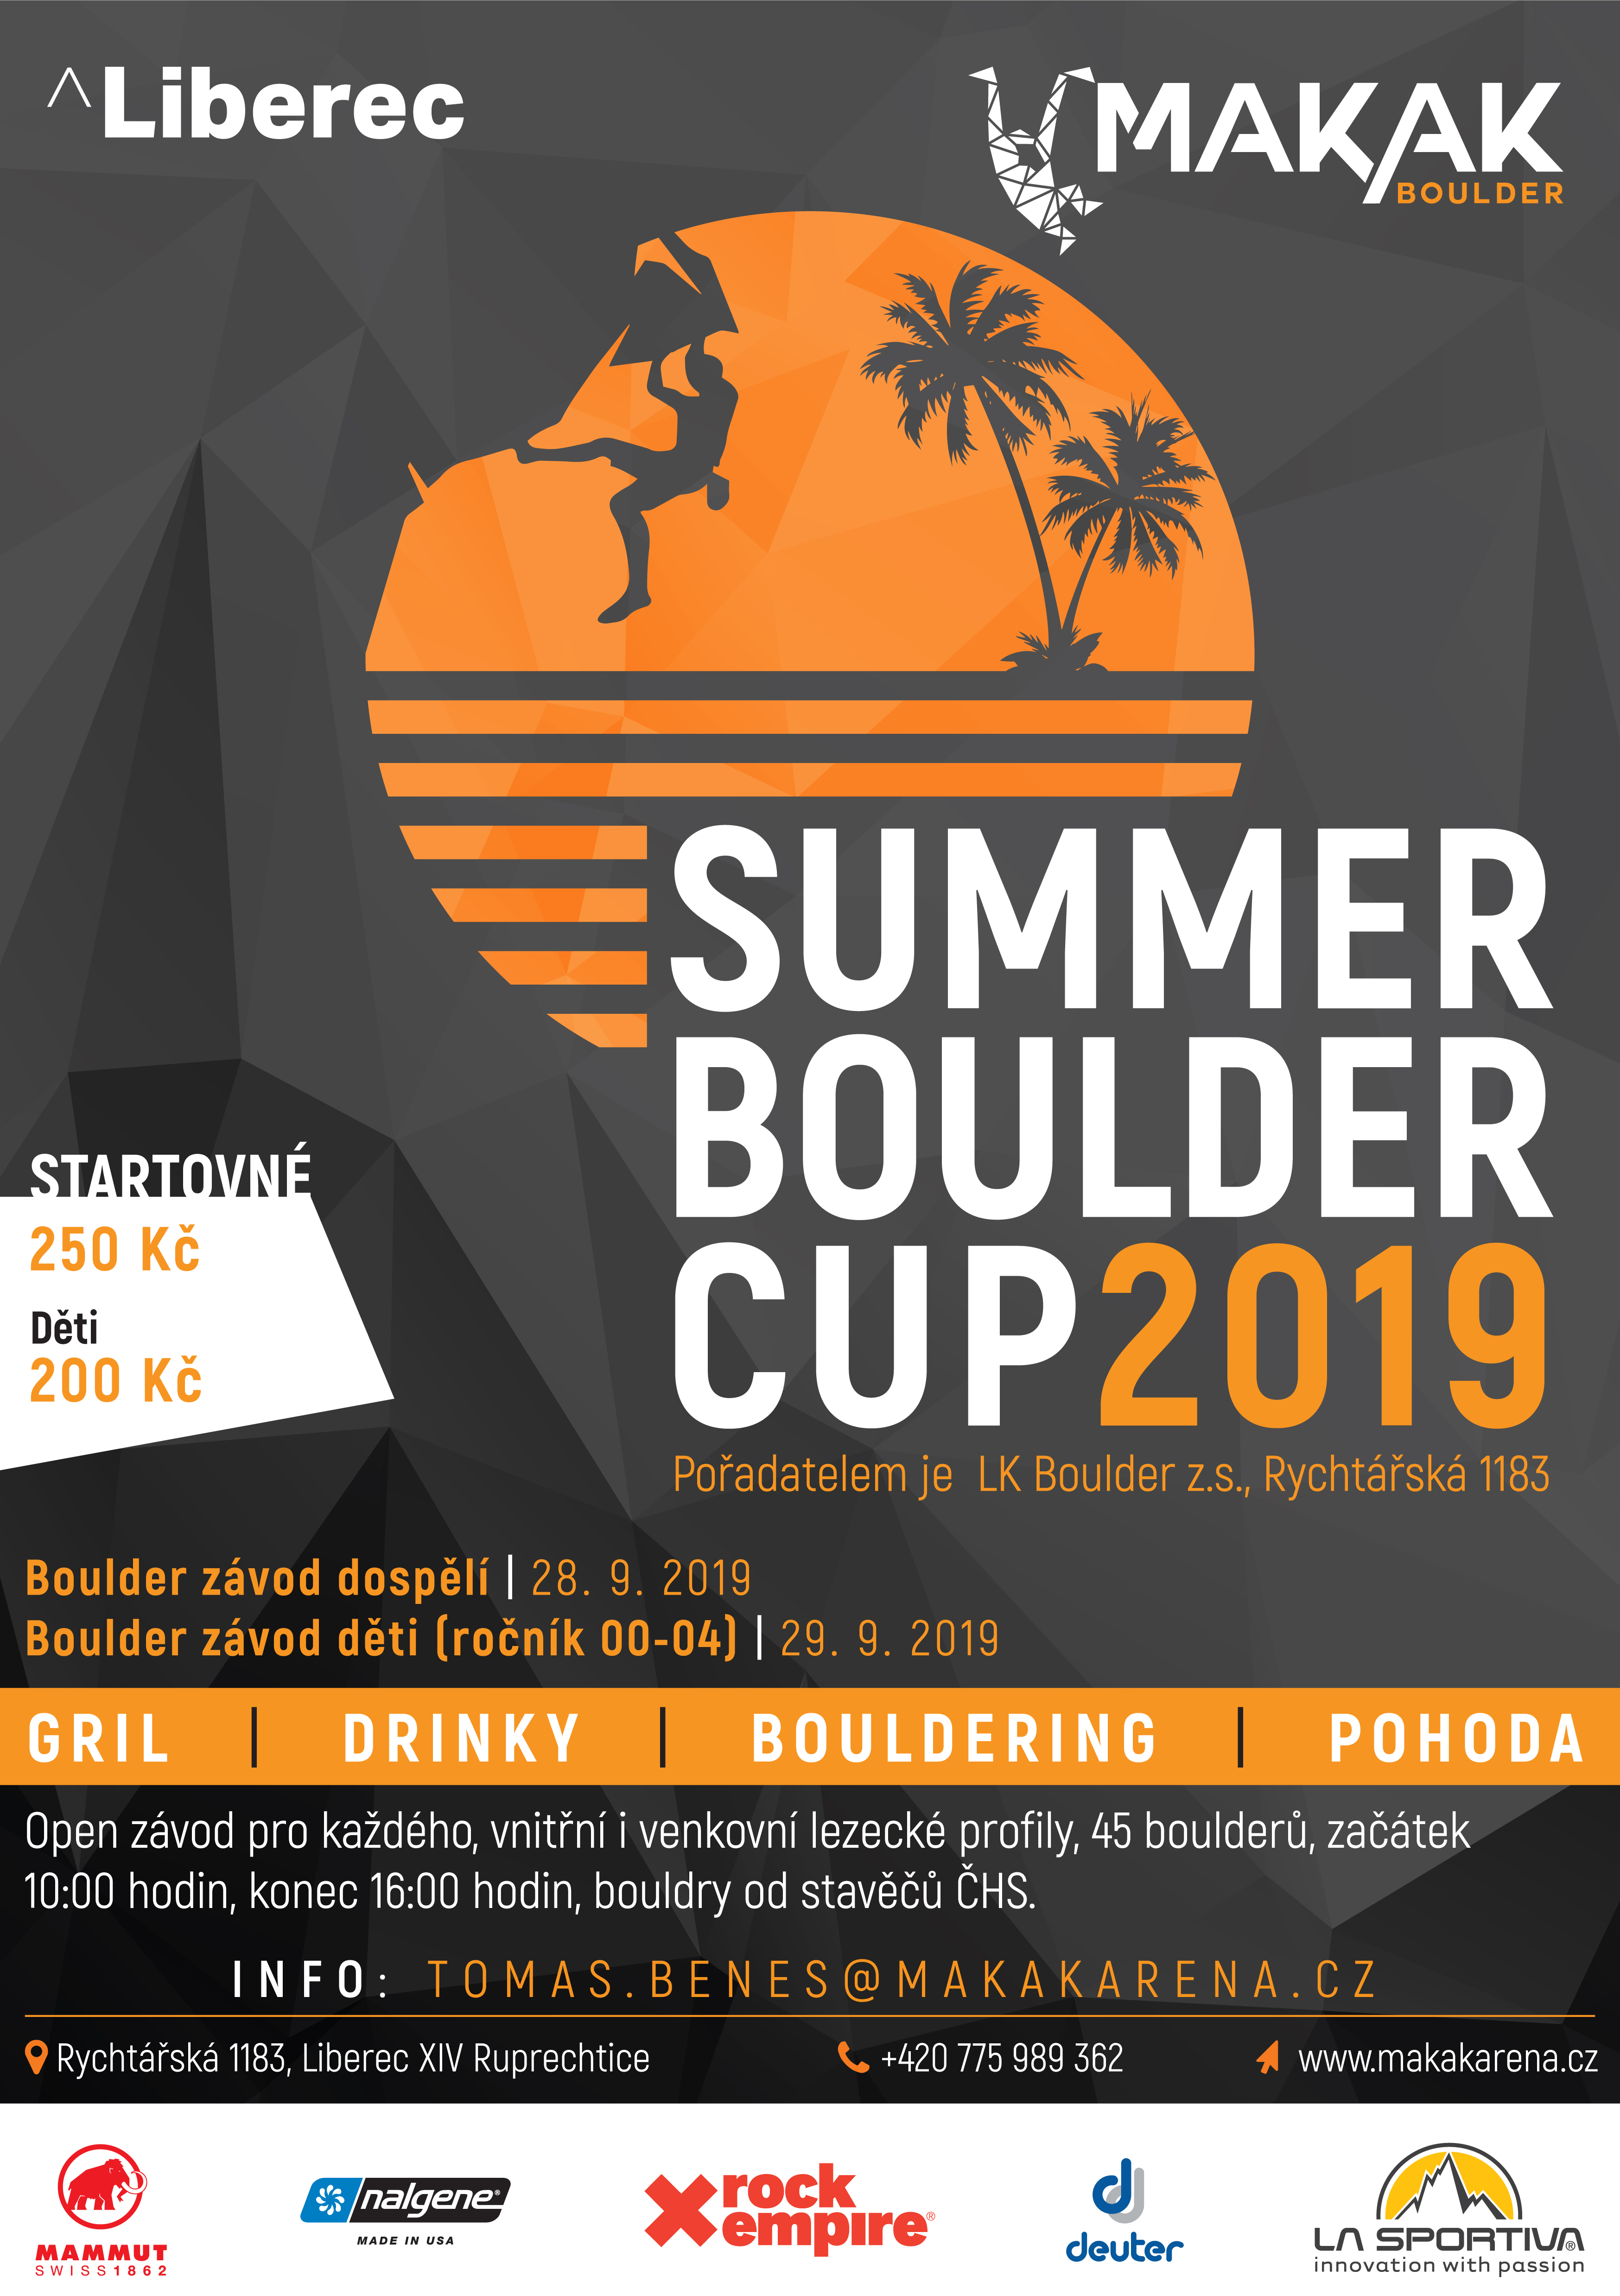 plakát summere boulder cup 2019.jpg (2.29 MB)